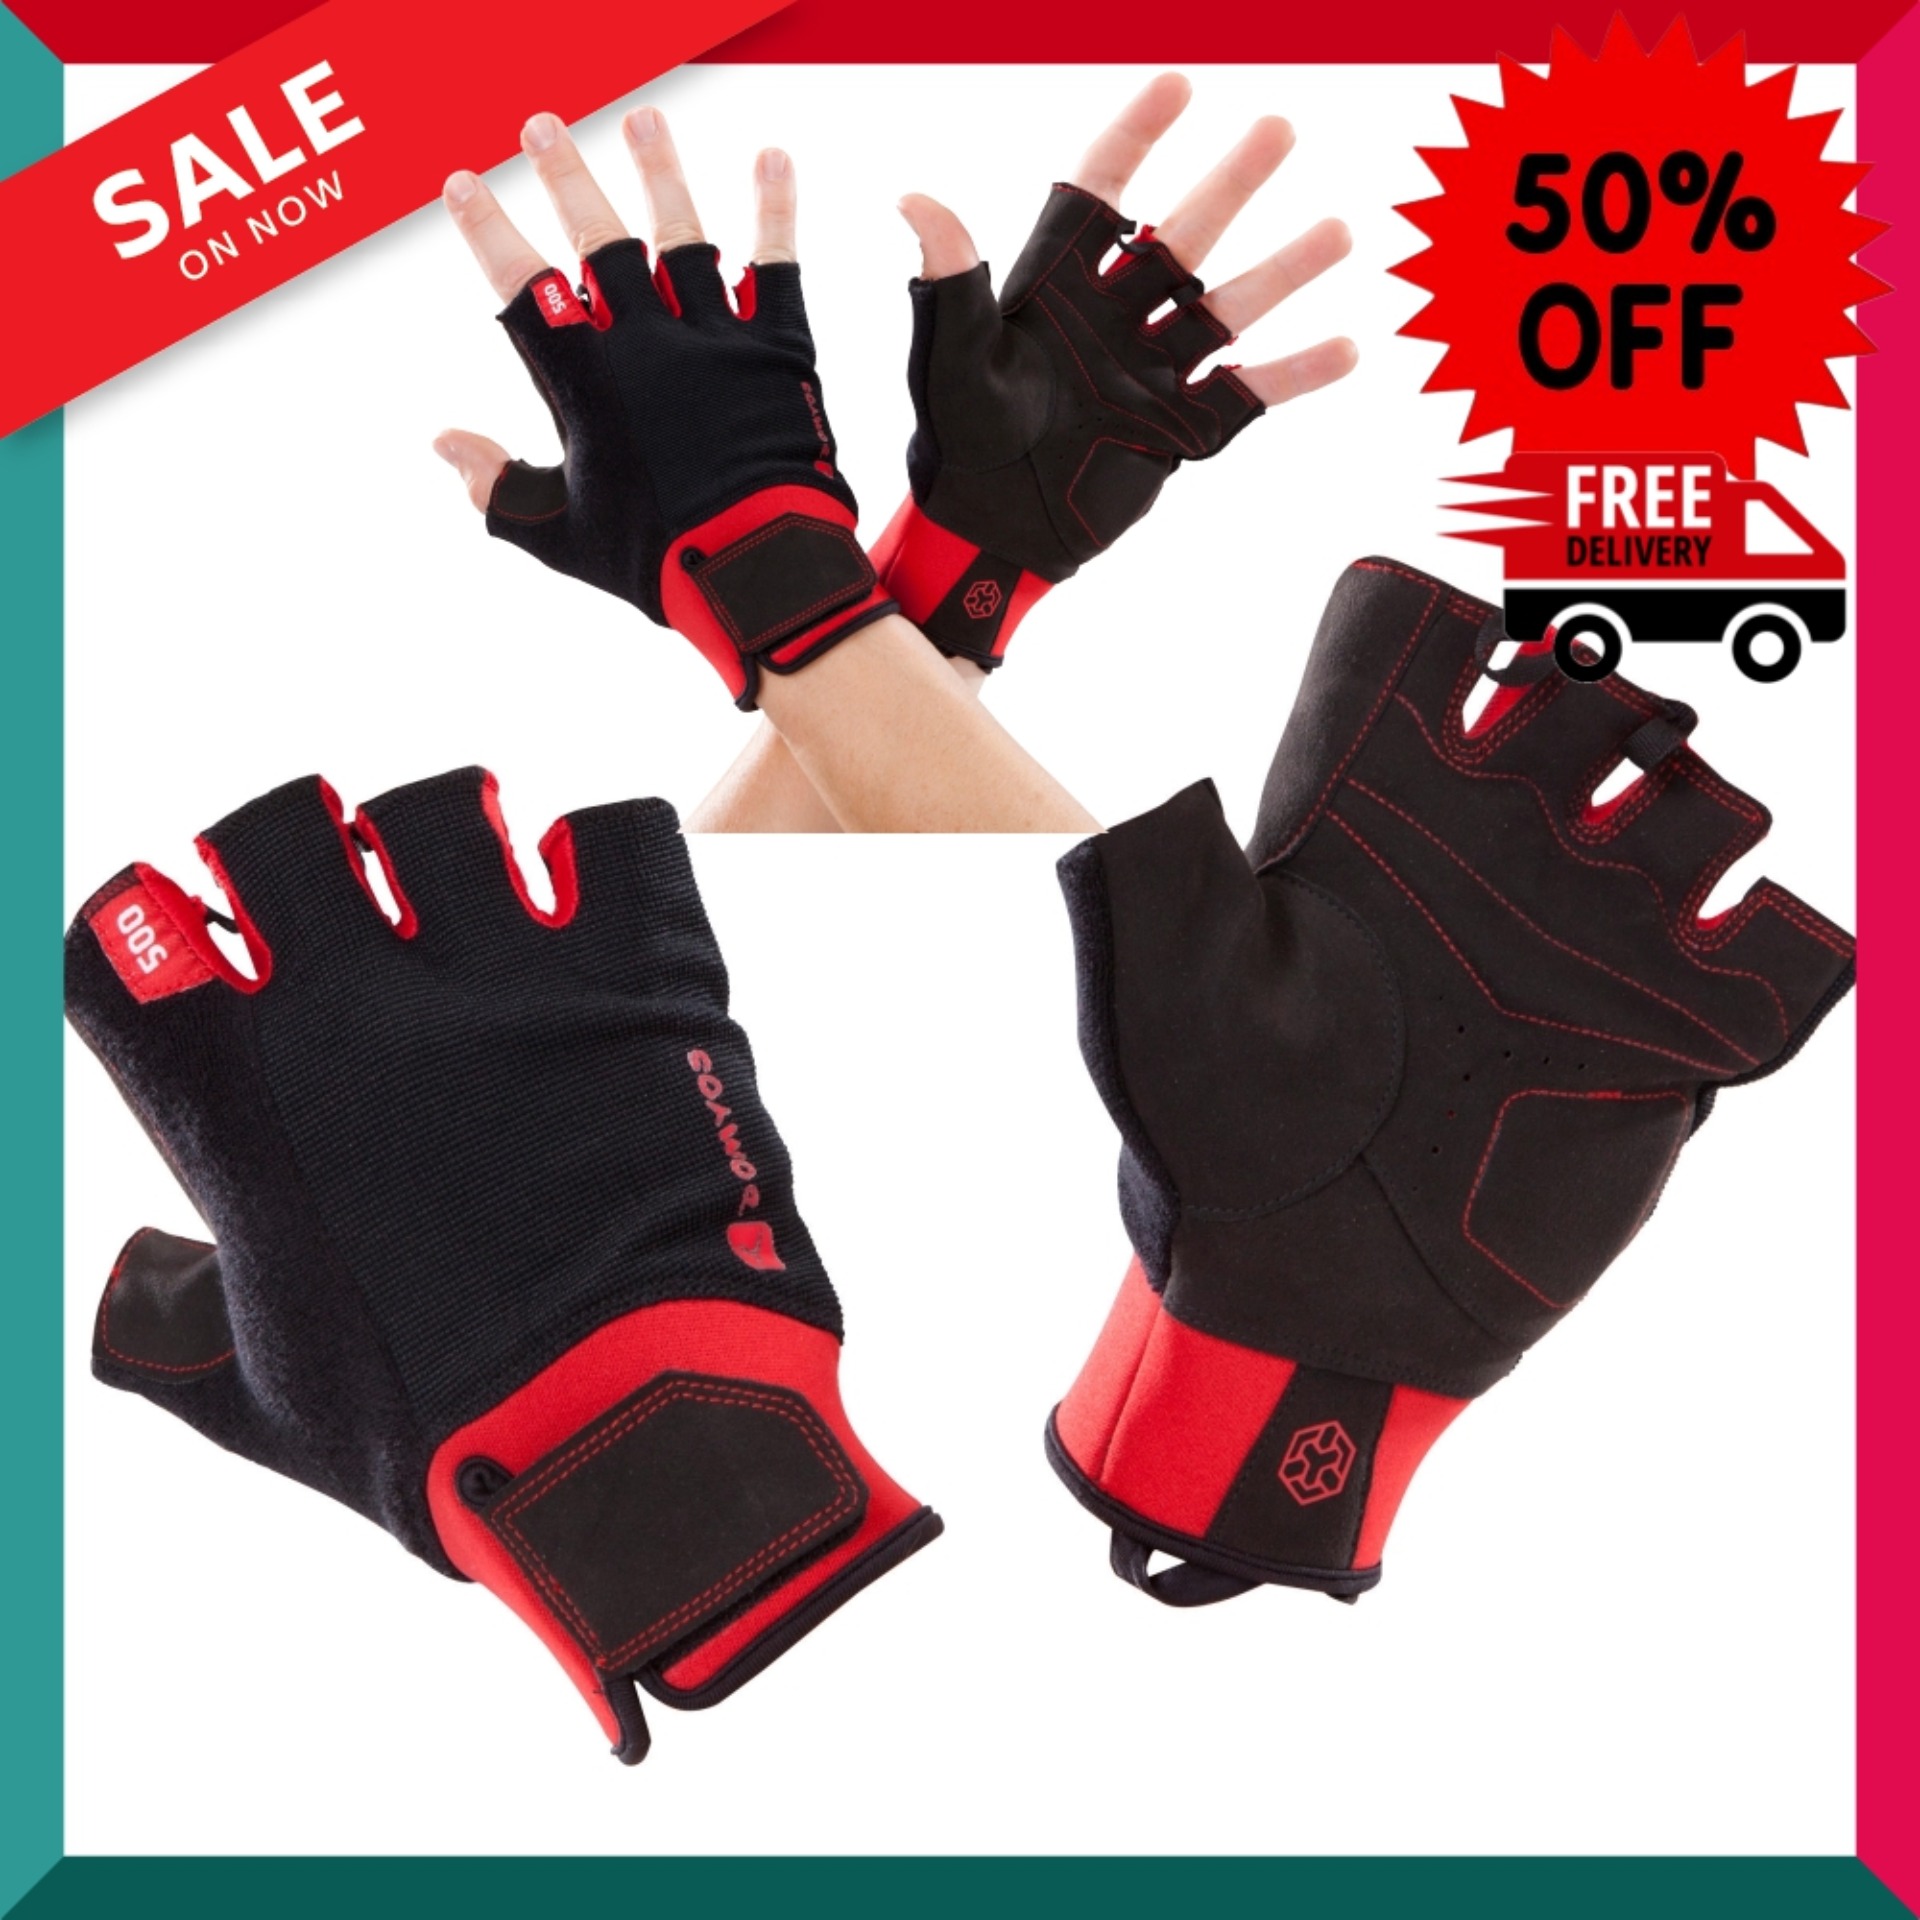 ถุงมือเวทเทรนนิ่งพร้อมแถบข้อมือรุ่น 500 (สีดำ/แดง) 500 Weight Training Glove With Rip-Tab Cuff - Black/Red พิลาทิส Pilates อุปกรณ์กีฬา ถุงมือ ถุงมือฟิตเนส โปรโมชั่นสุดคุ้ม โค้งสุดท้าย ส่งฟรี Free Delivery